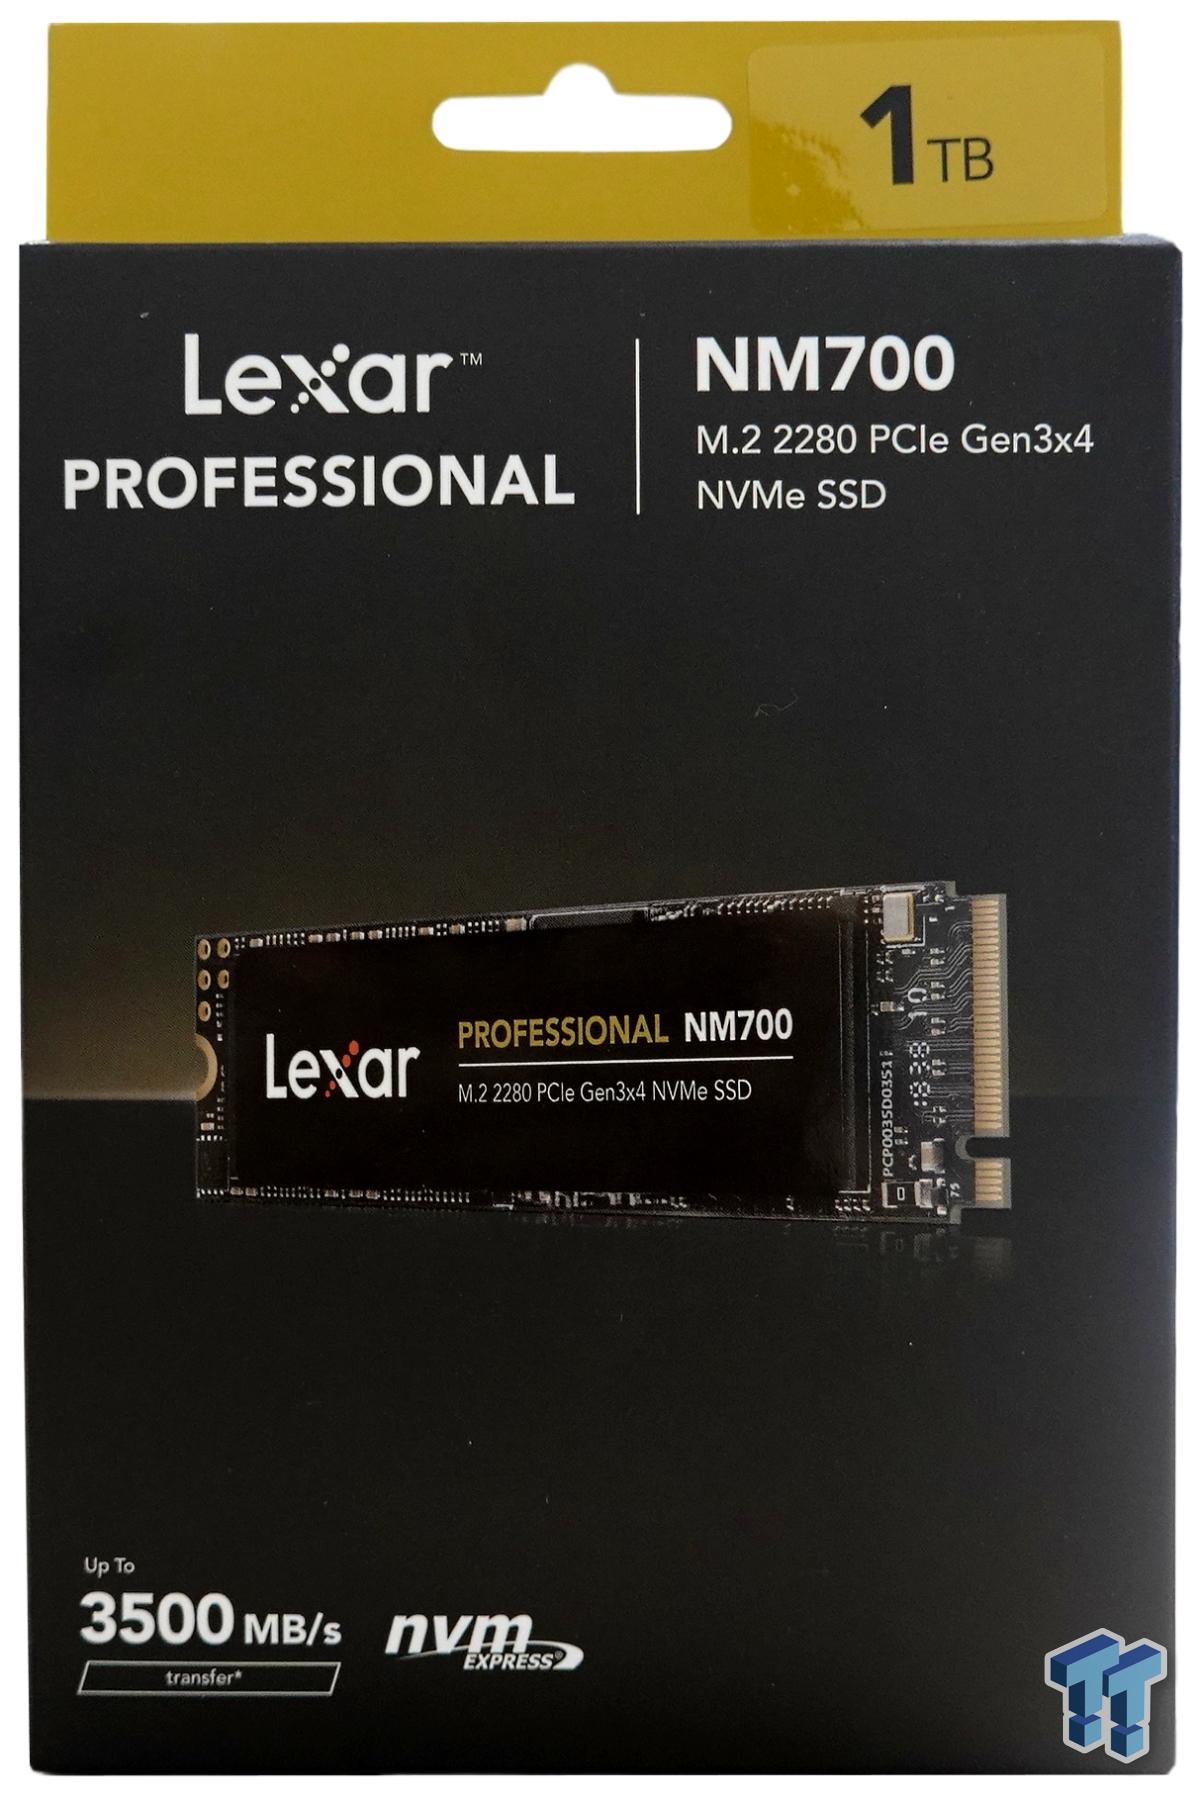 Lexar Professional NM700 1TB SSD M.2 Review